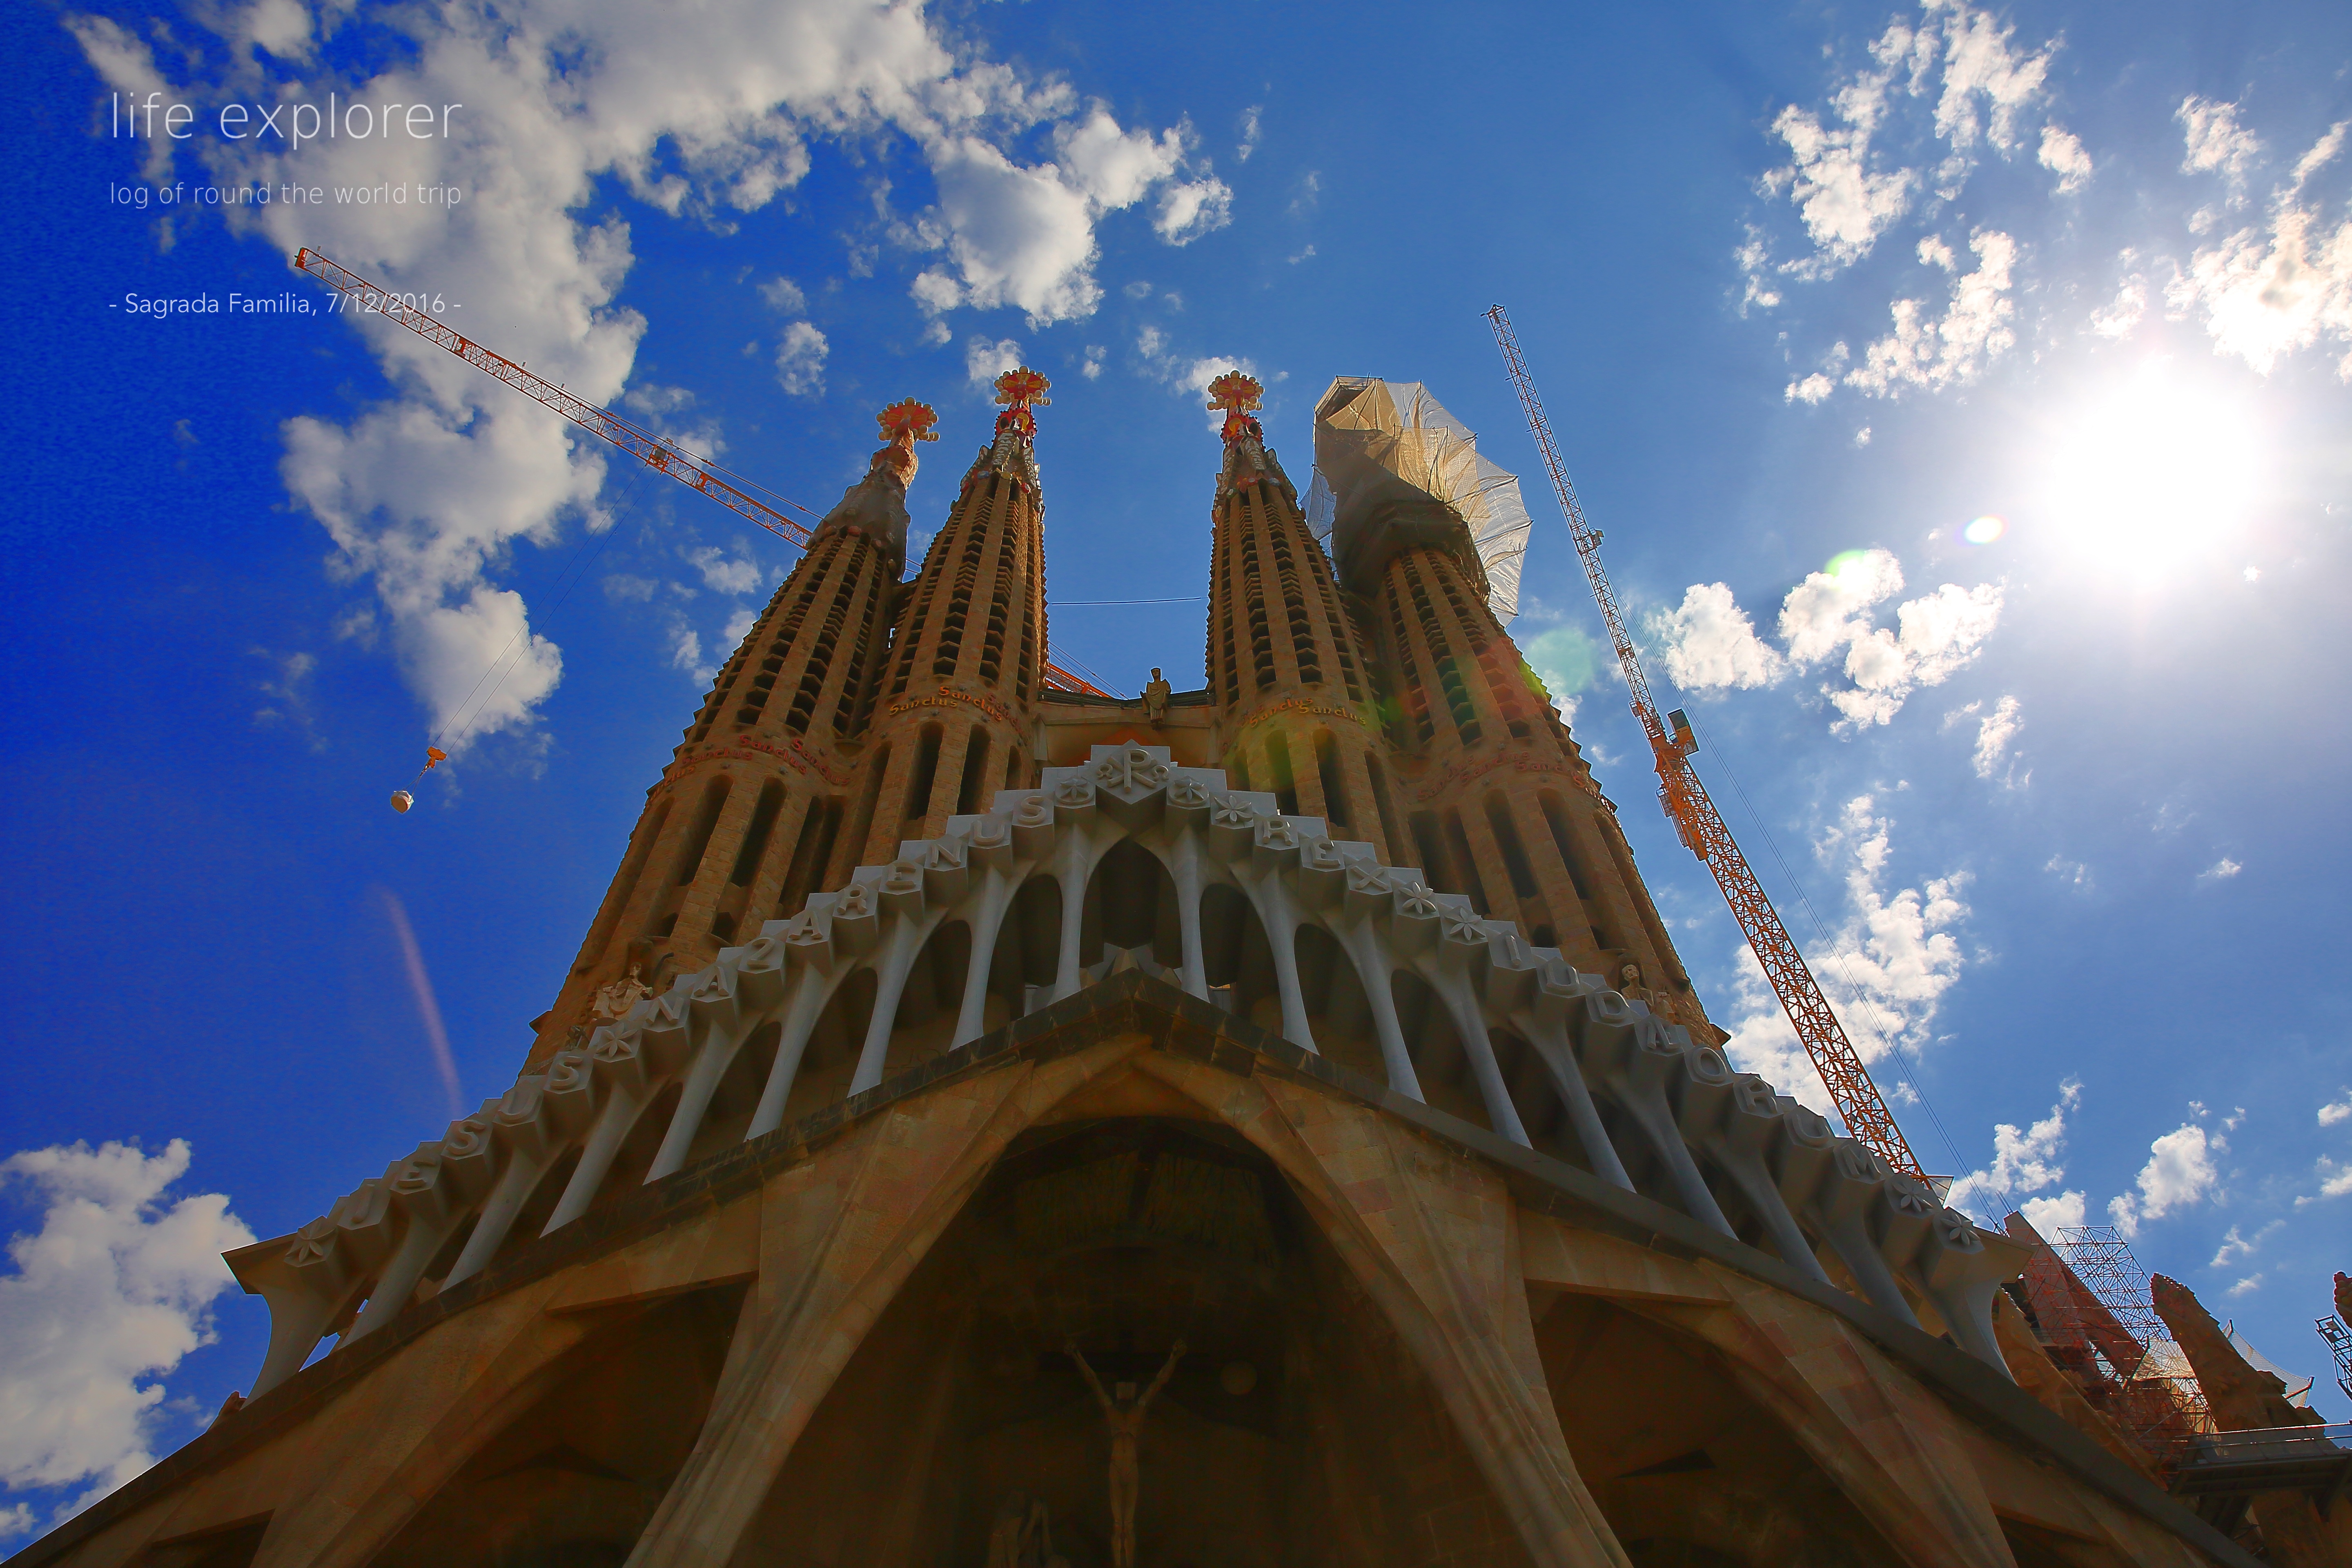 #61 世界で最も完成が待ち遠しい建物 「サグラダファミリア」- The World’s Most Long-awaited Building “Sagrada Familia”